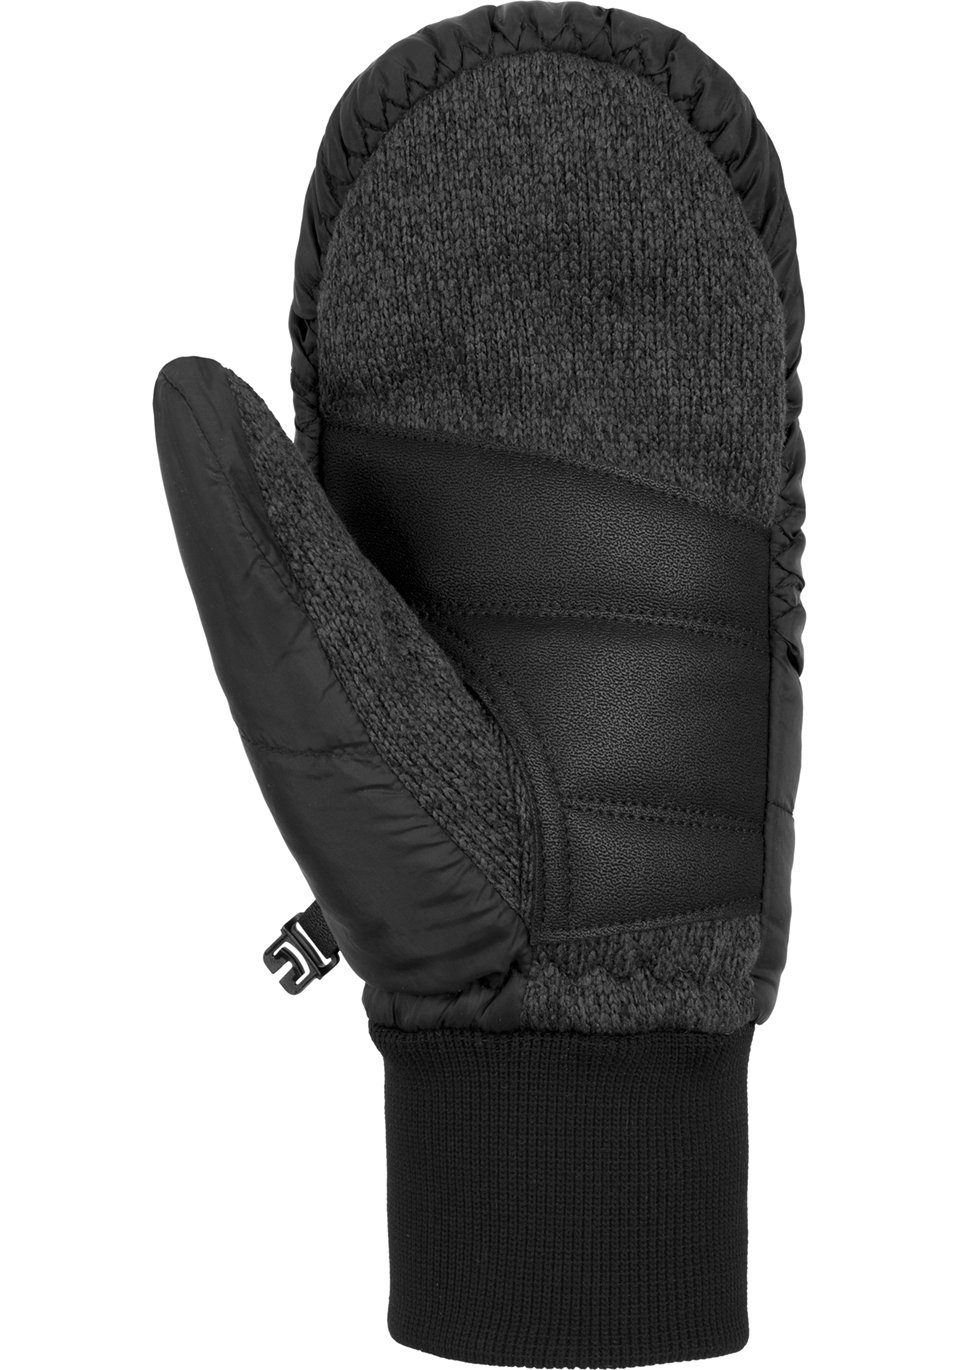 Damen Handschuhe Reusch Fäustlinge Stratos STORMBLOXX™ Mitten in sportlichem Design